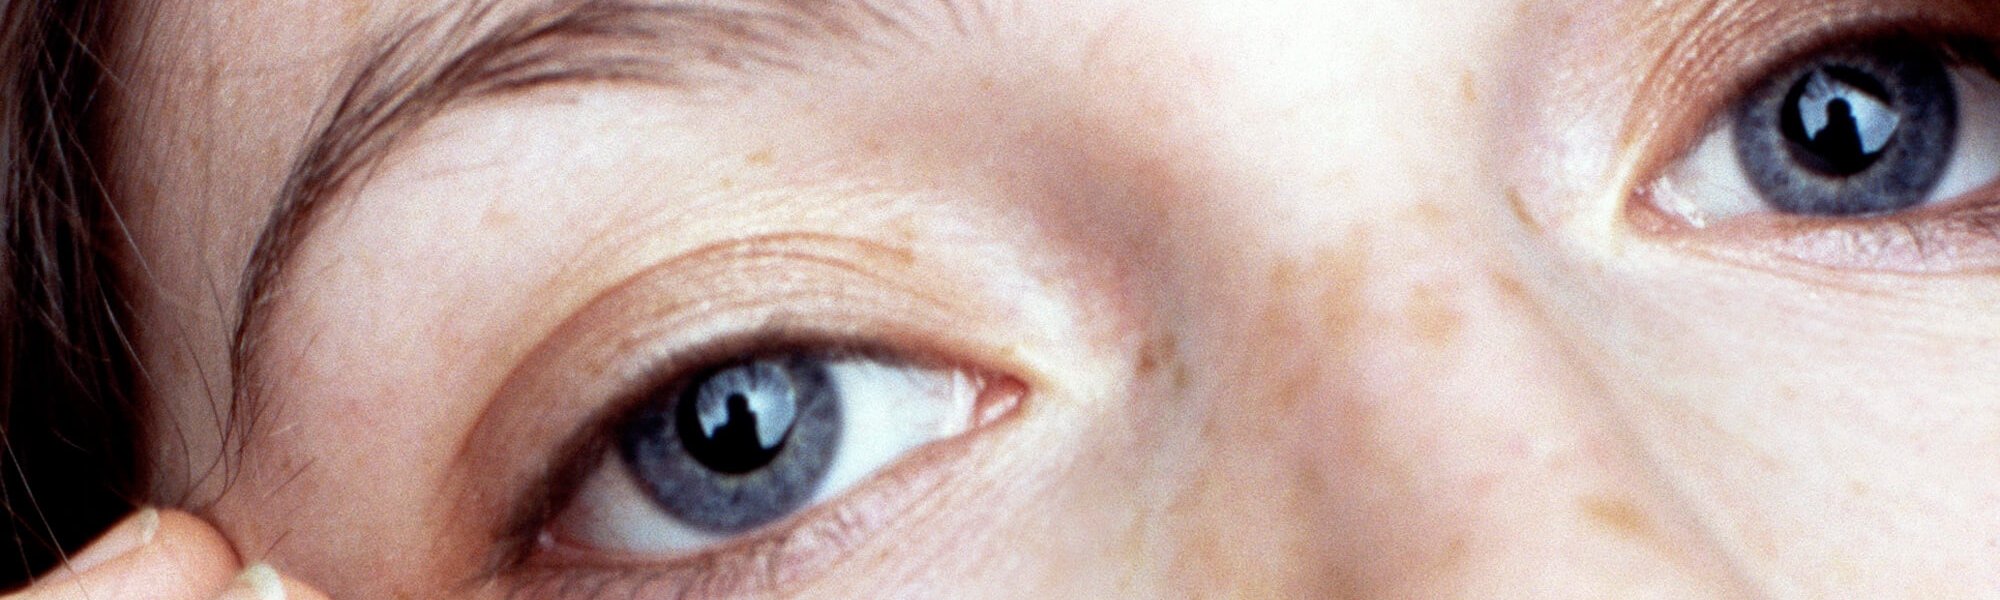 Bấm huyệt xung quanh mắt: Giải pháp cho đôi mắt trẻ trung hơn Hero